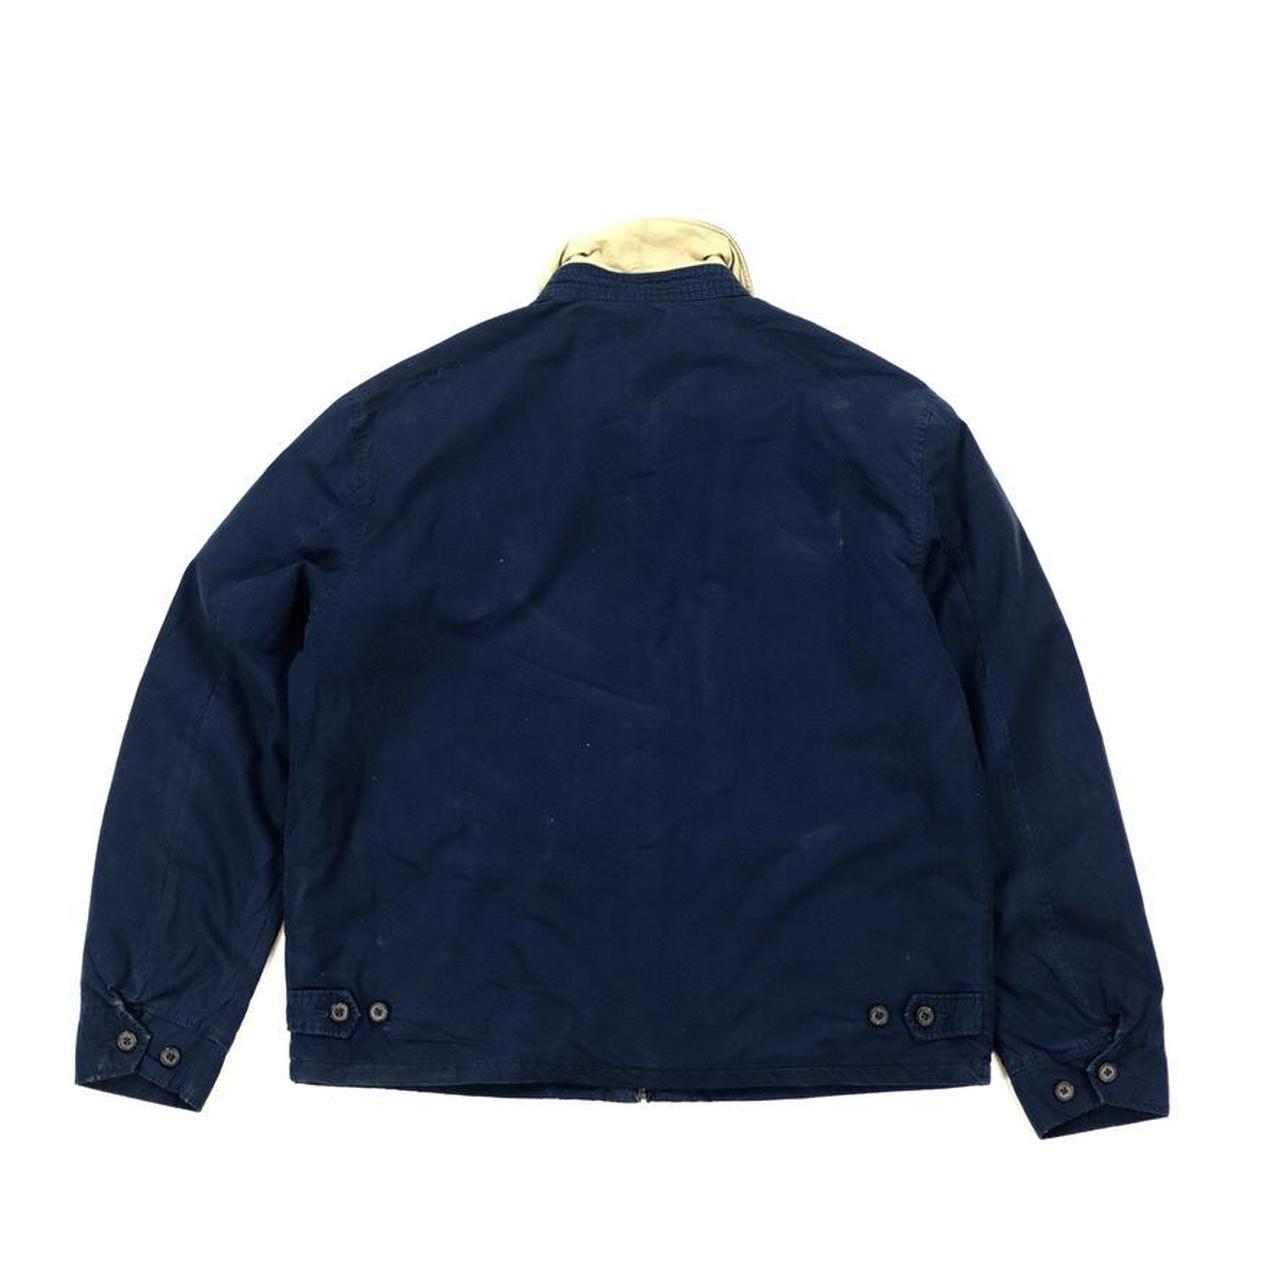 Vintage Ralph Lauren bomber jacket. Classic 90s... - Depop